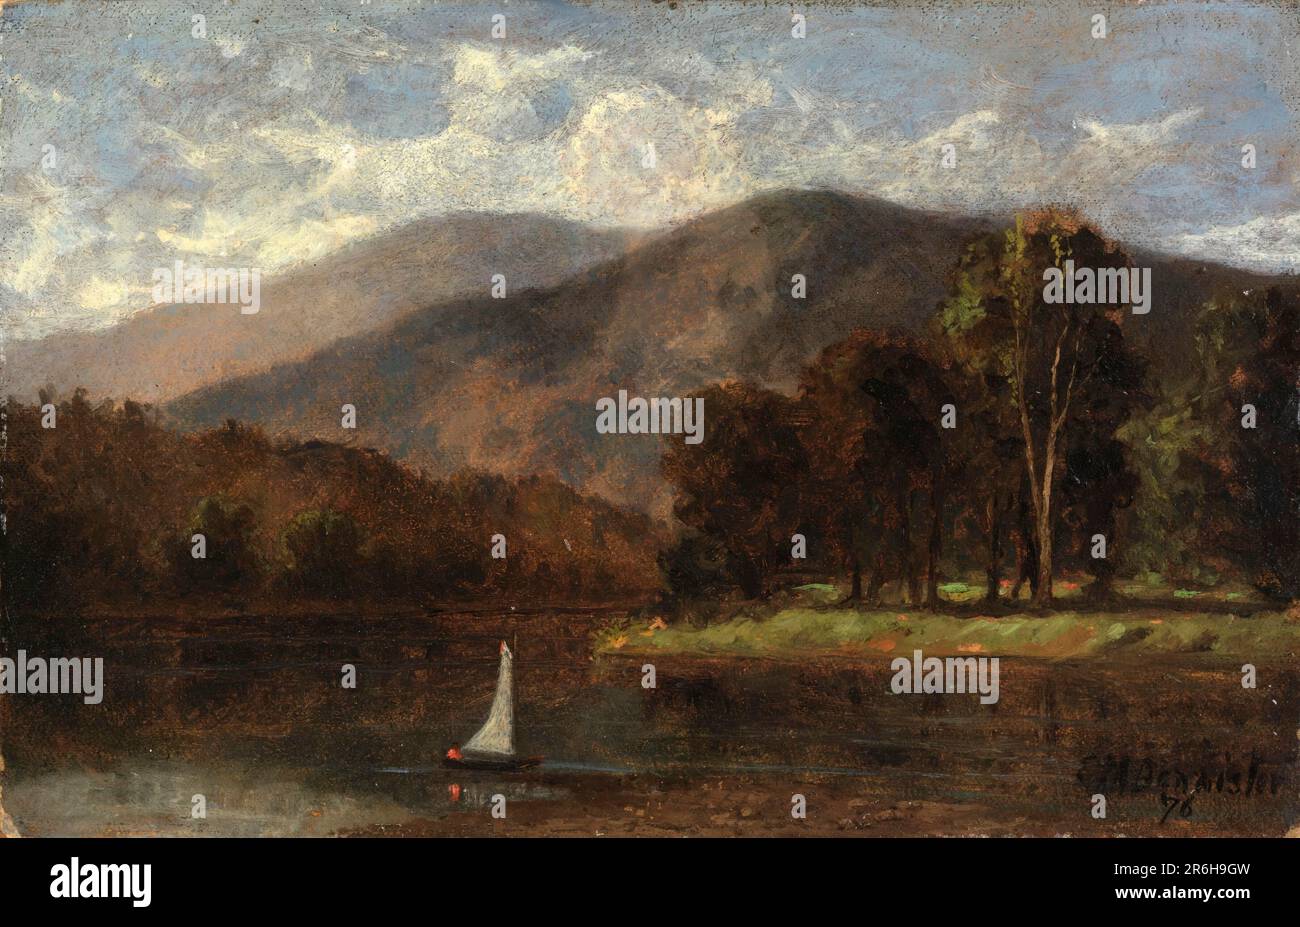 Senza titolo (barca a vela in fiume). Data: 1876. olio a bordo. Museo: Smithsonian American Art Museum. Foto Stock